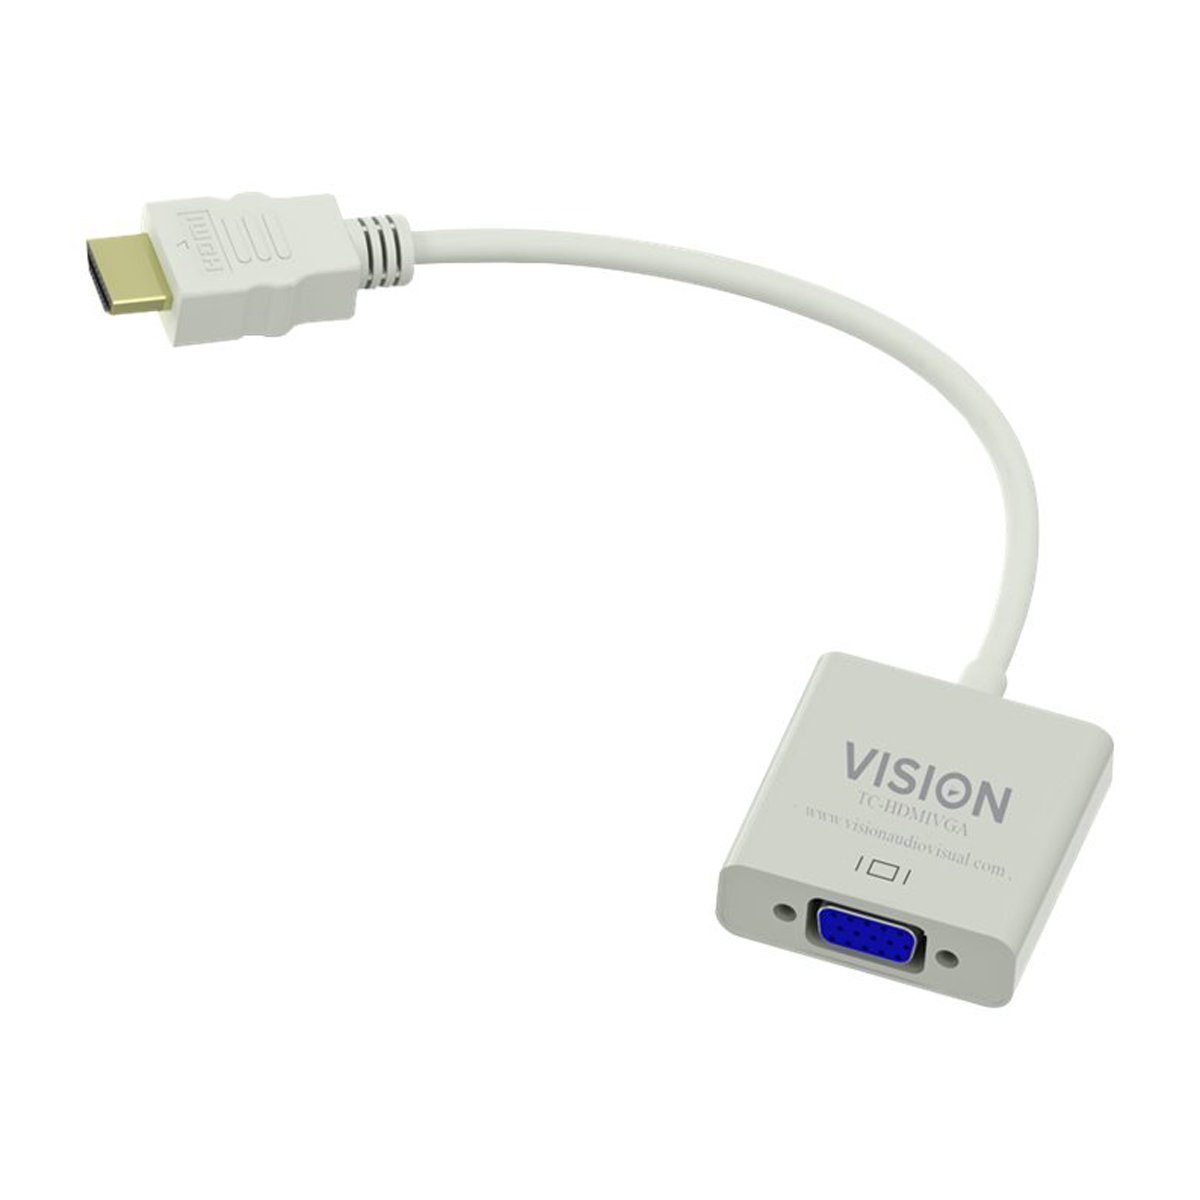 Vision HDMI zu VGA-Adapter HDMI-Adapter, 1920 x 1080, Gesamtlänge: 230 mm, Weiß